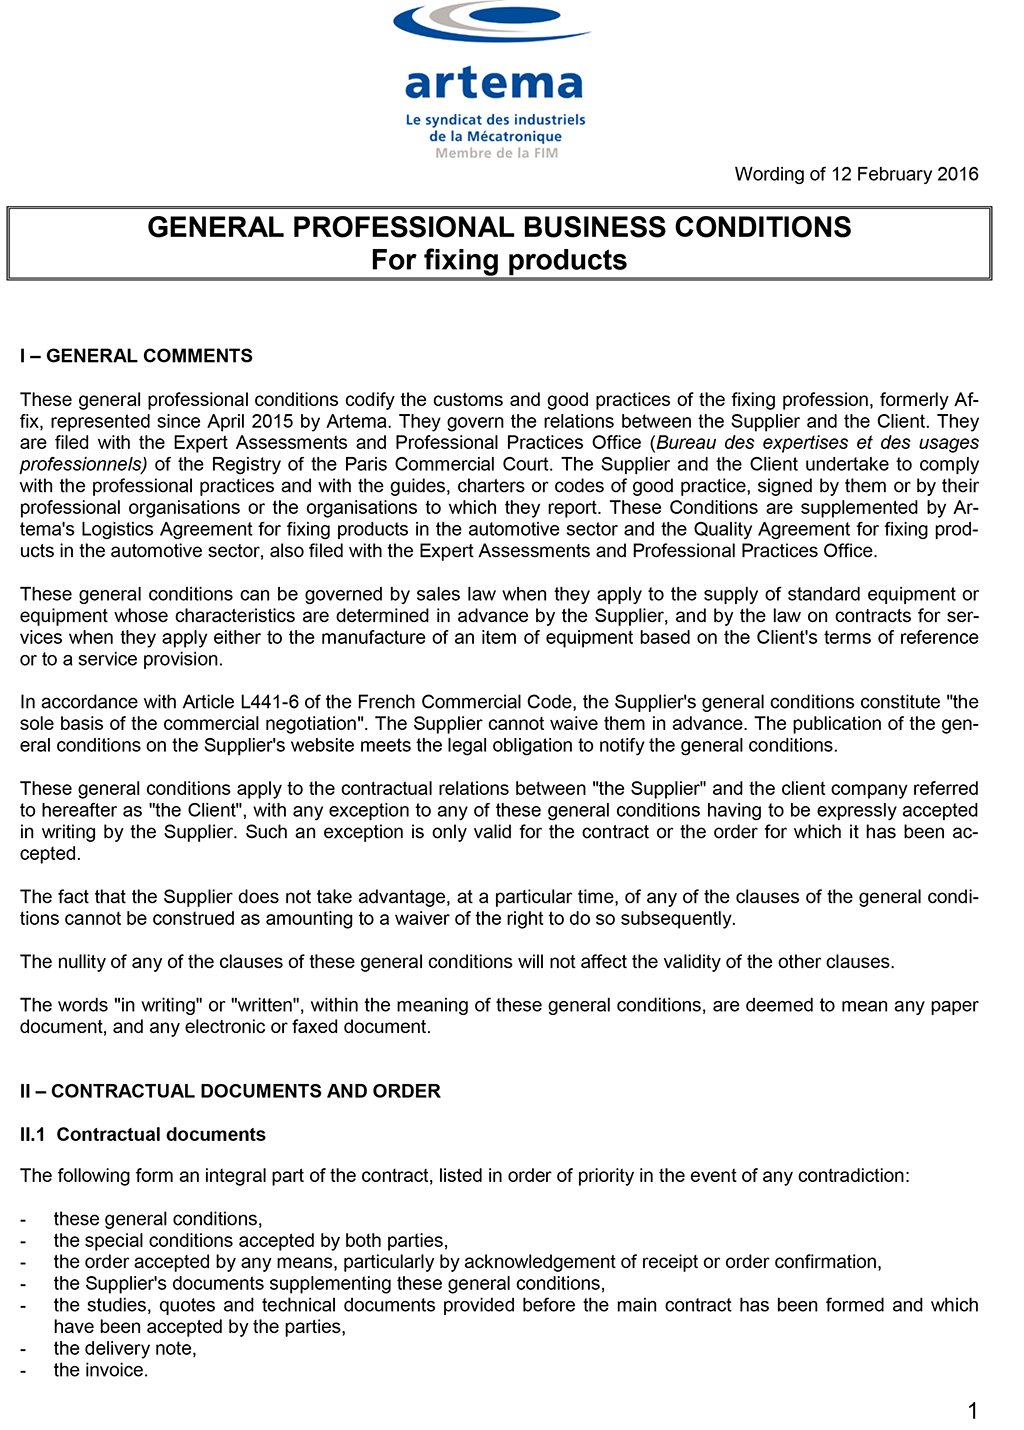 Conditions générales professionnelles d'affaires pour les produits de fixation - février 2016